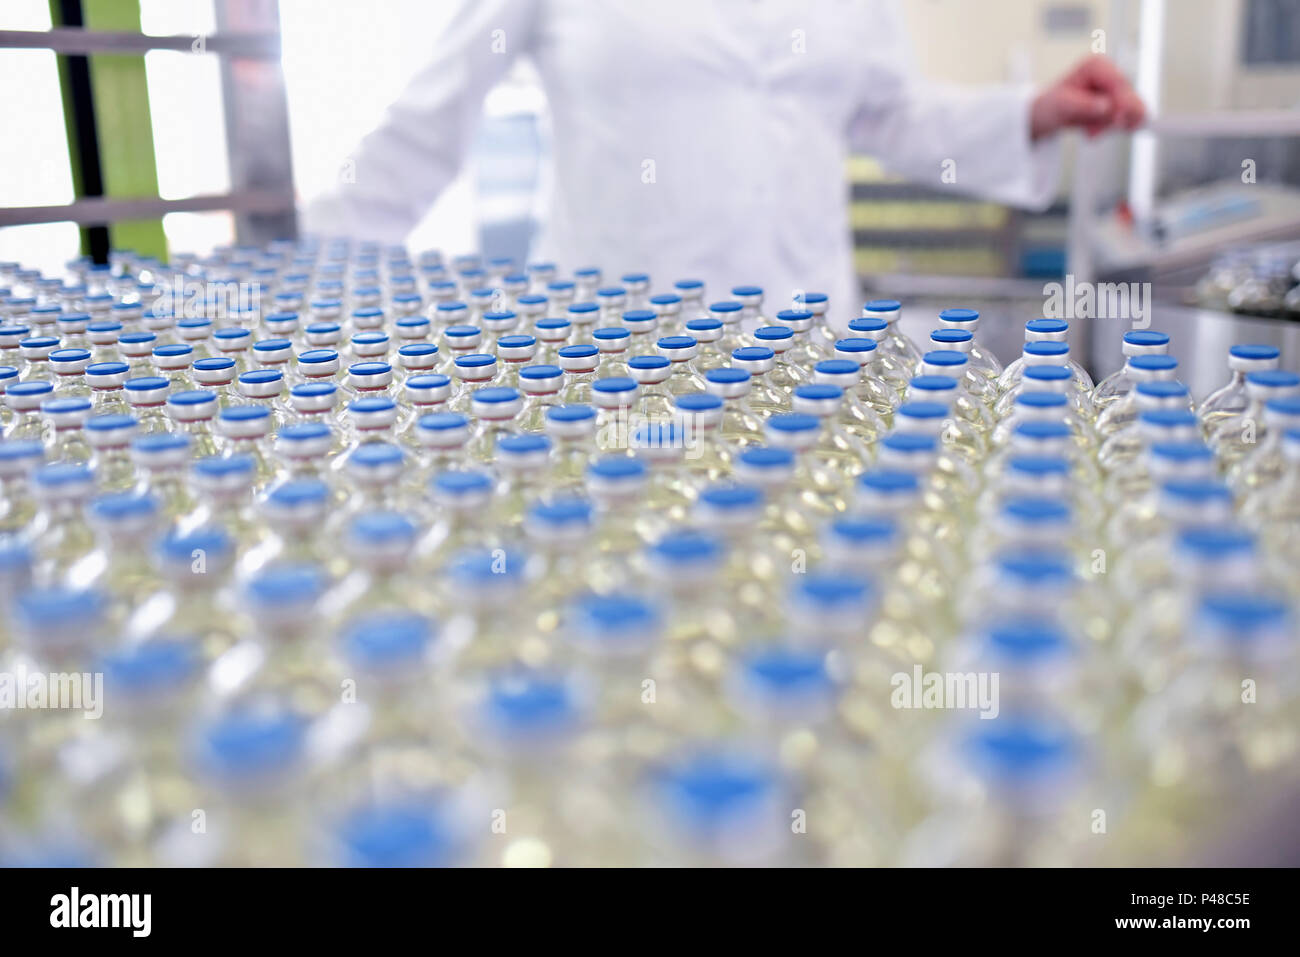 Riempimento e produzione di farmaci in un prodotto farmaceutico nastro trasportatore con bottiglie e un lavoratore Foto Stock